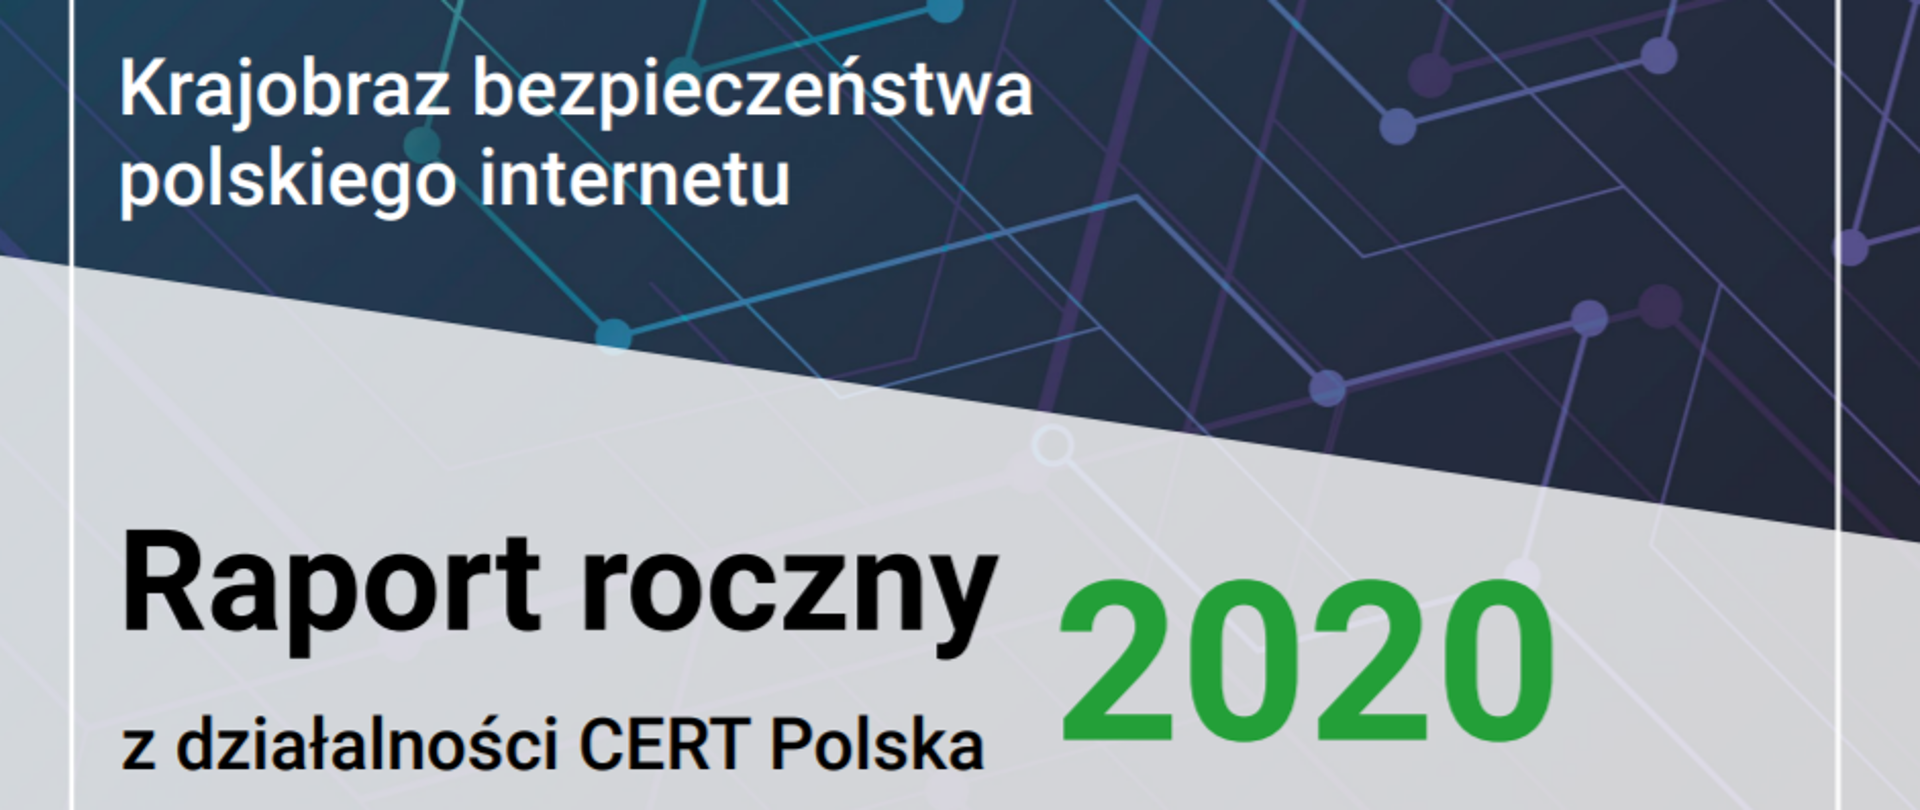 okładka raportu rocznego z działalności CERT POLSKA "Krajobraz bezpieczeństwa polskiego interentu 2020" 